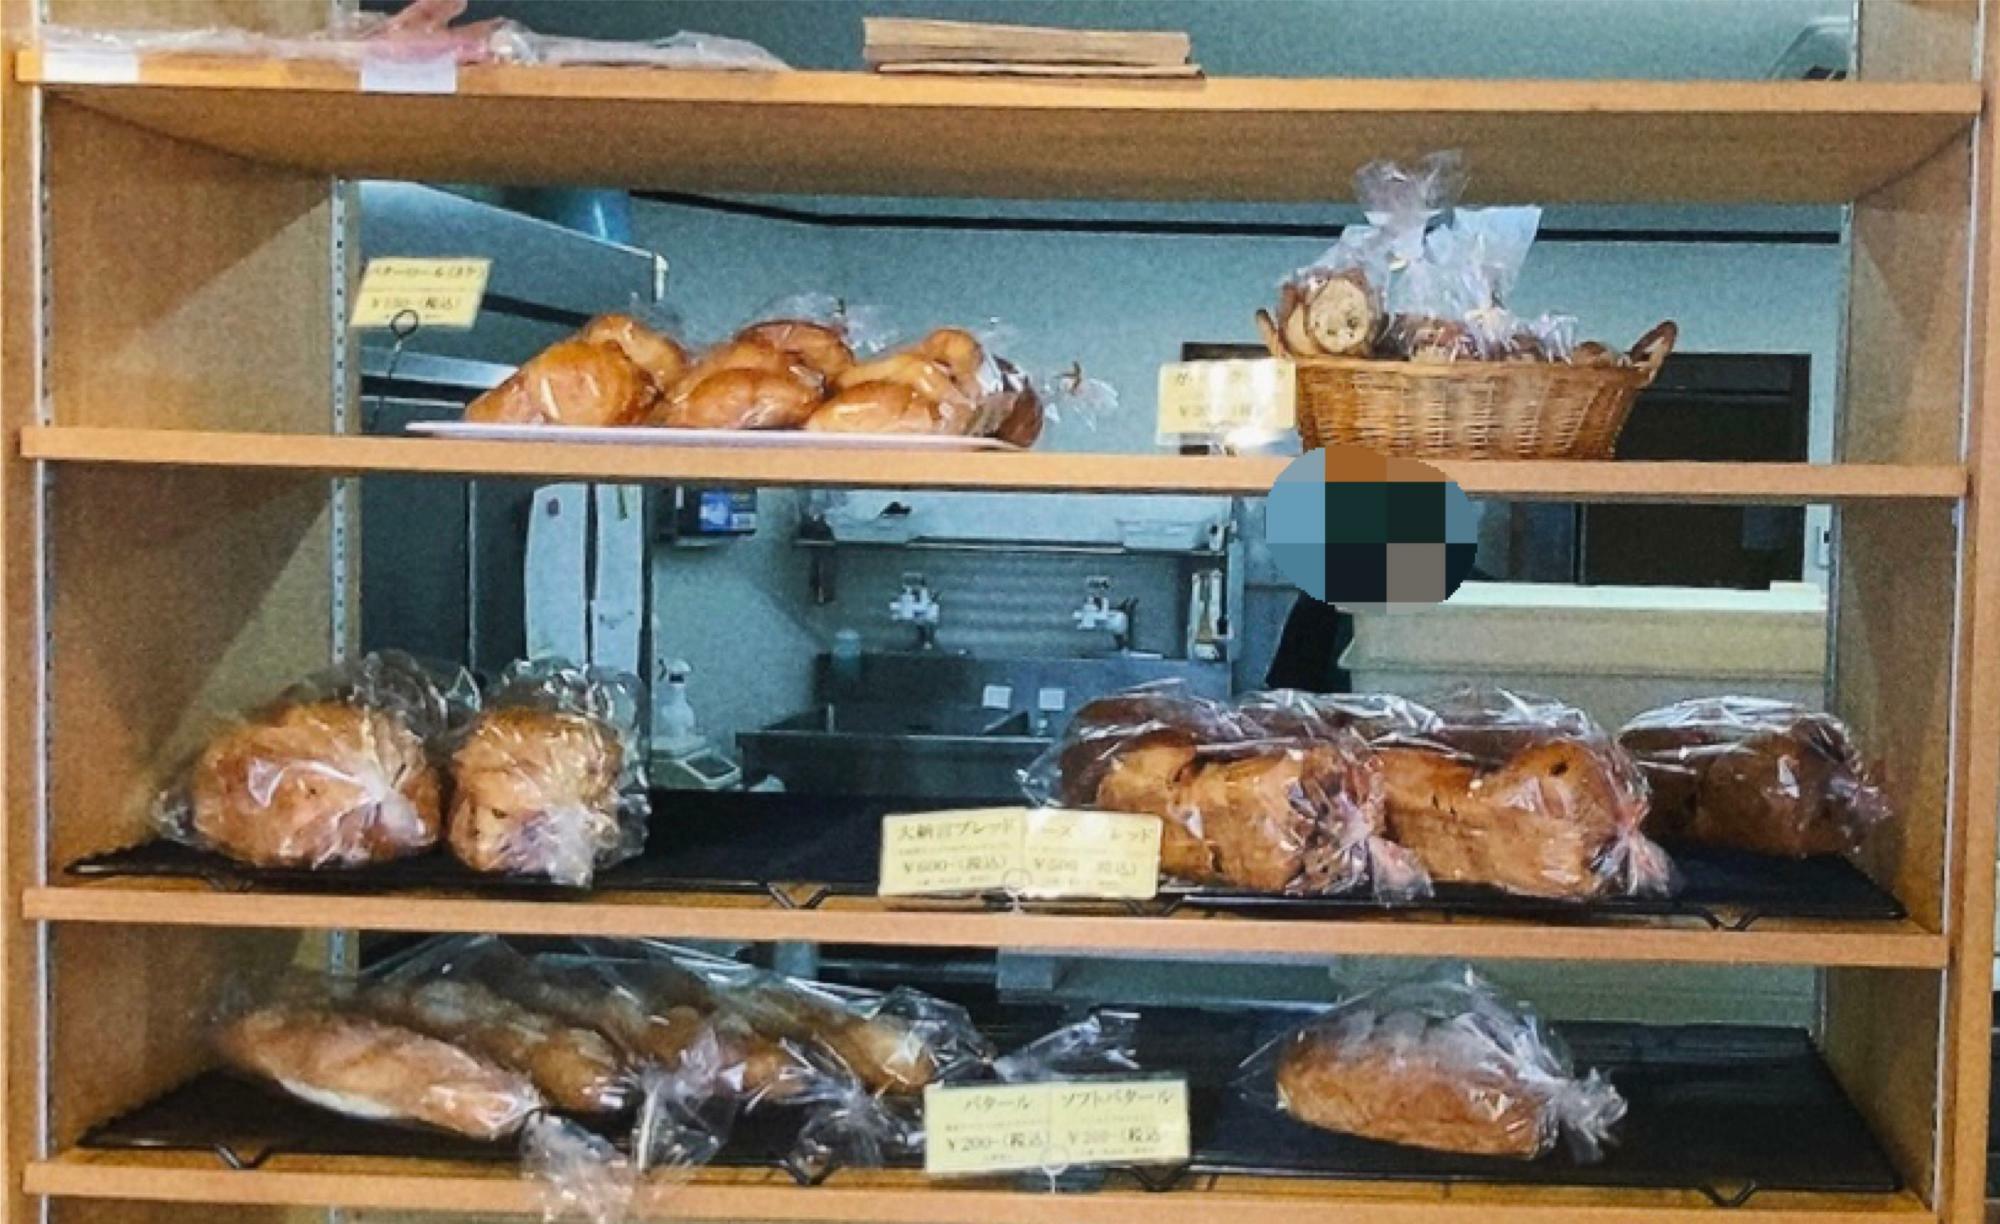 カウンターと厨房の間にある棚にもパンが並びます。